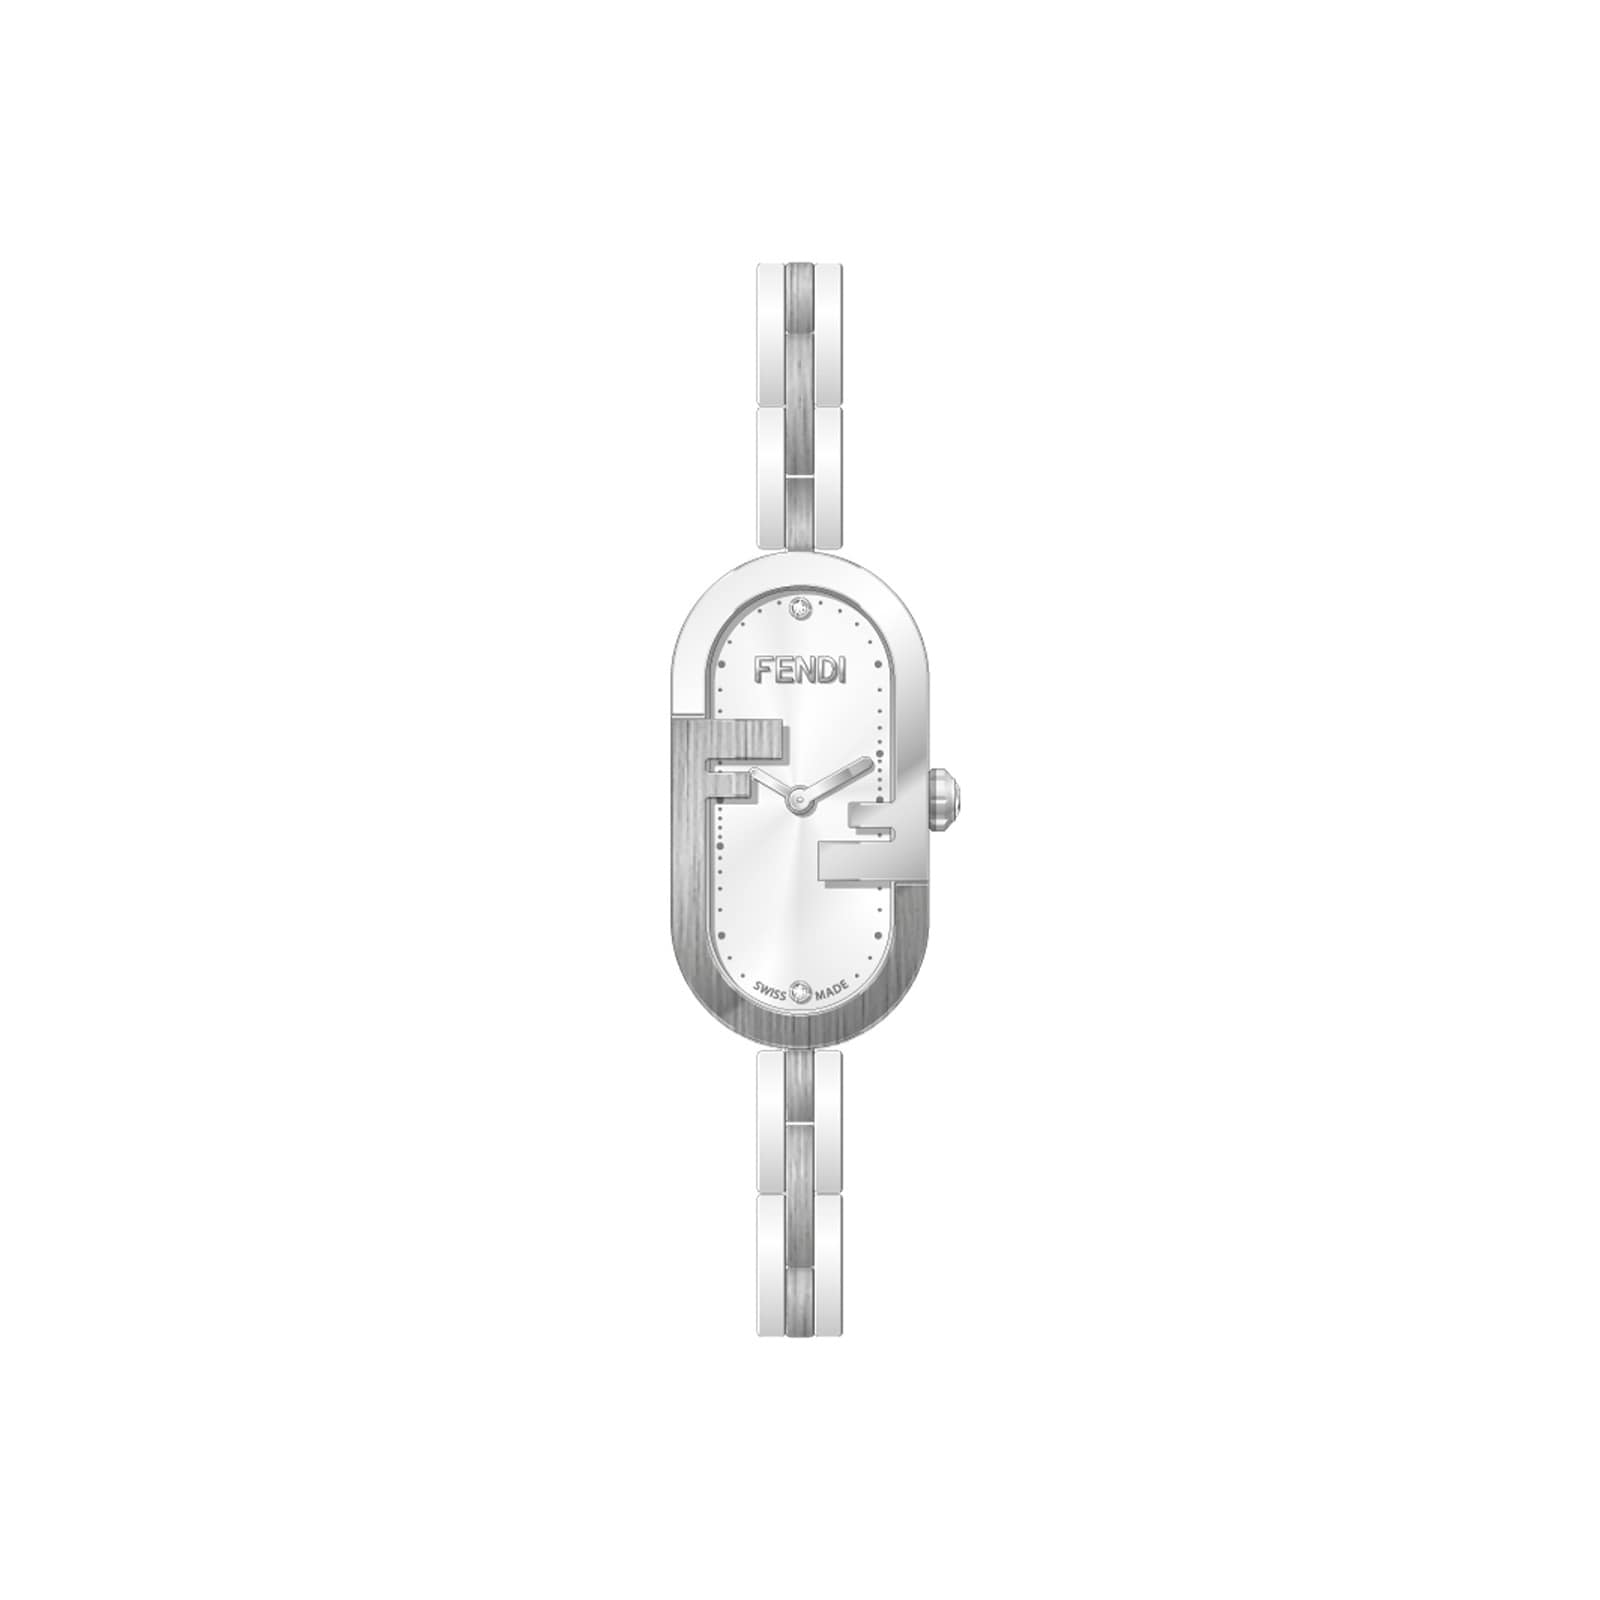 O’Lock Vertical 14.80mm X 28.30mm with O’Lock logo Watch